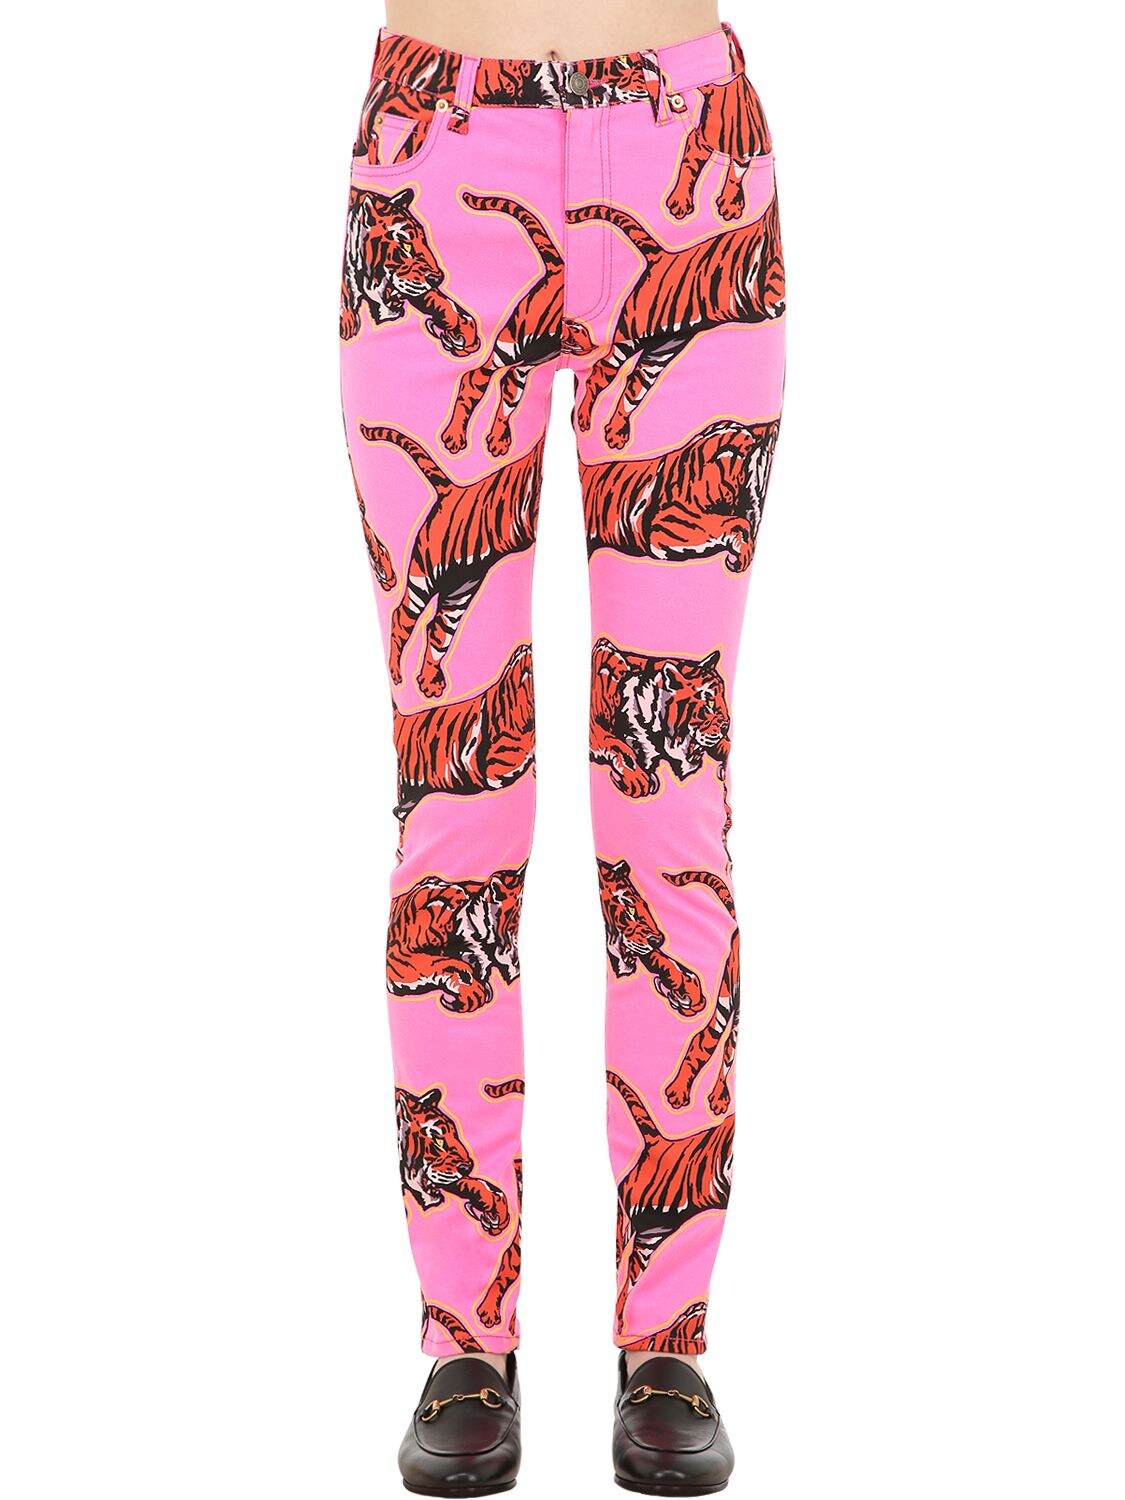 straf afvisning Registrering Gucci High Rise Tiger Print Denim Jeans In Pink | ModeSens